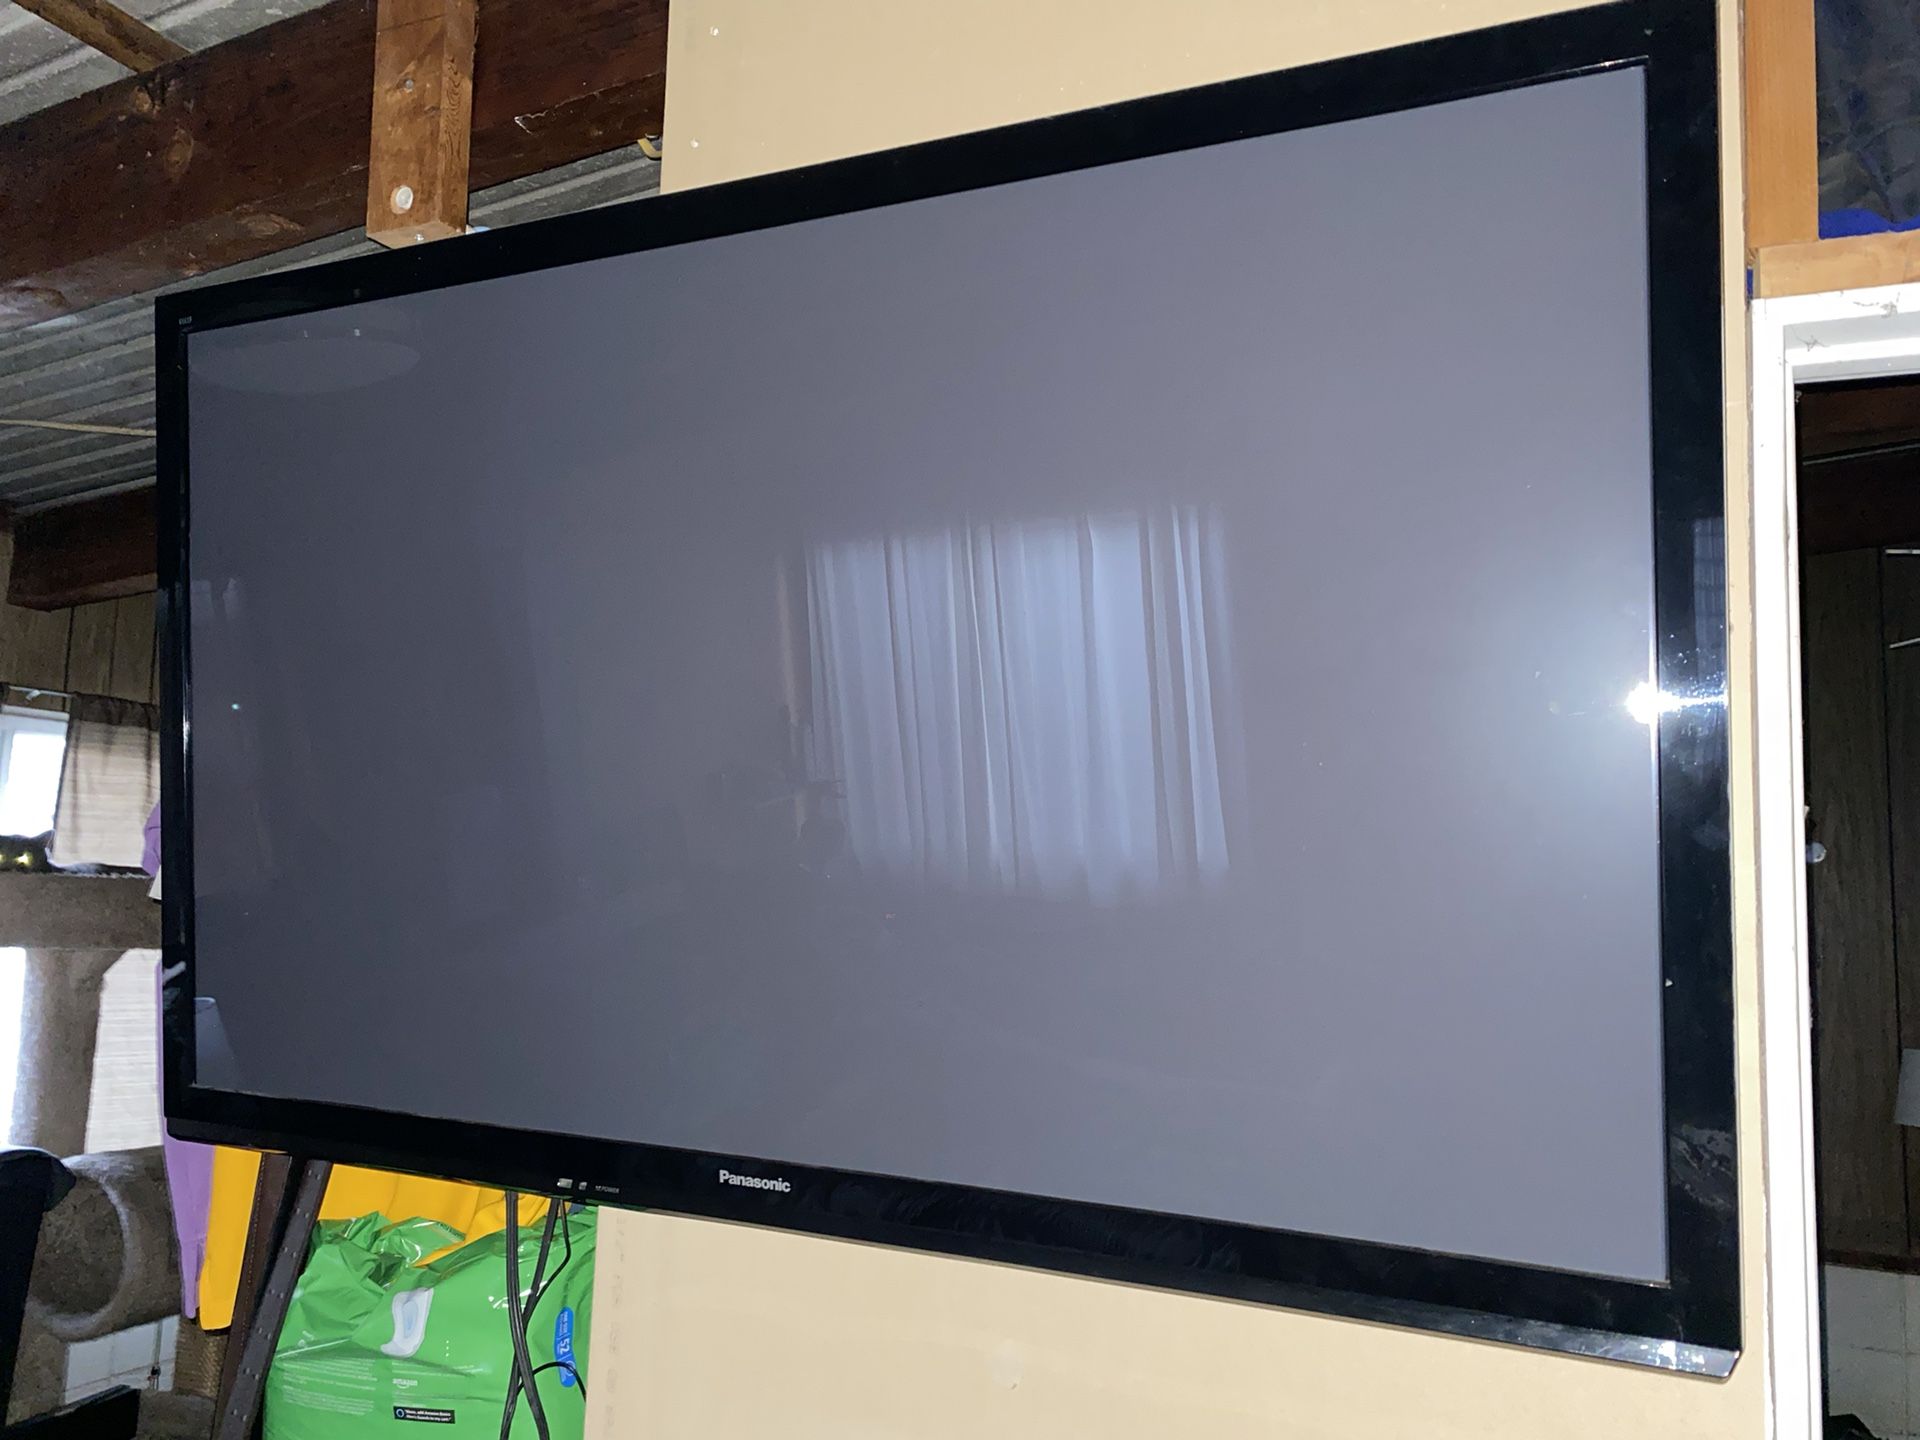 Panasonic TV with wall mount